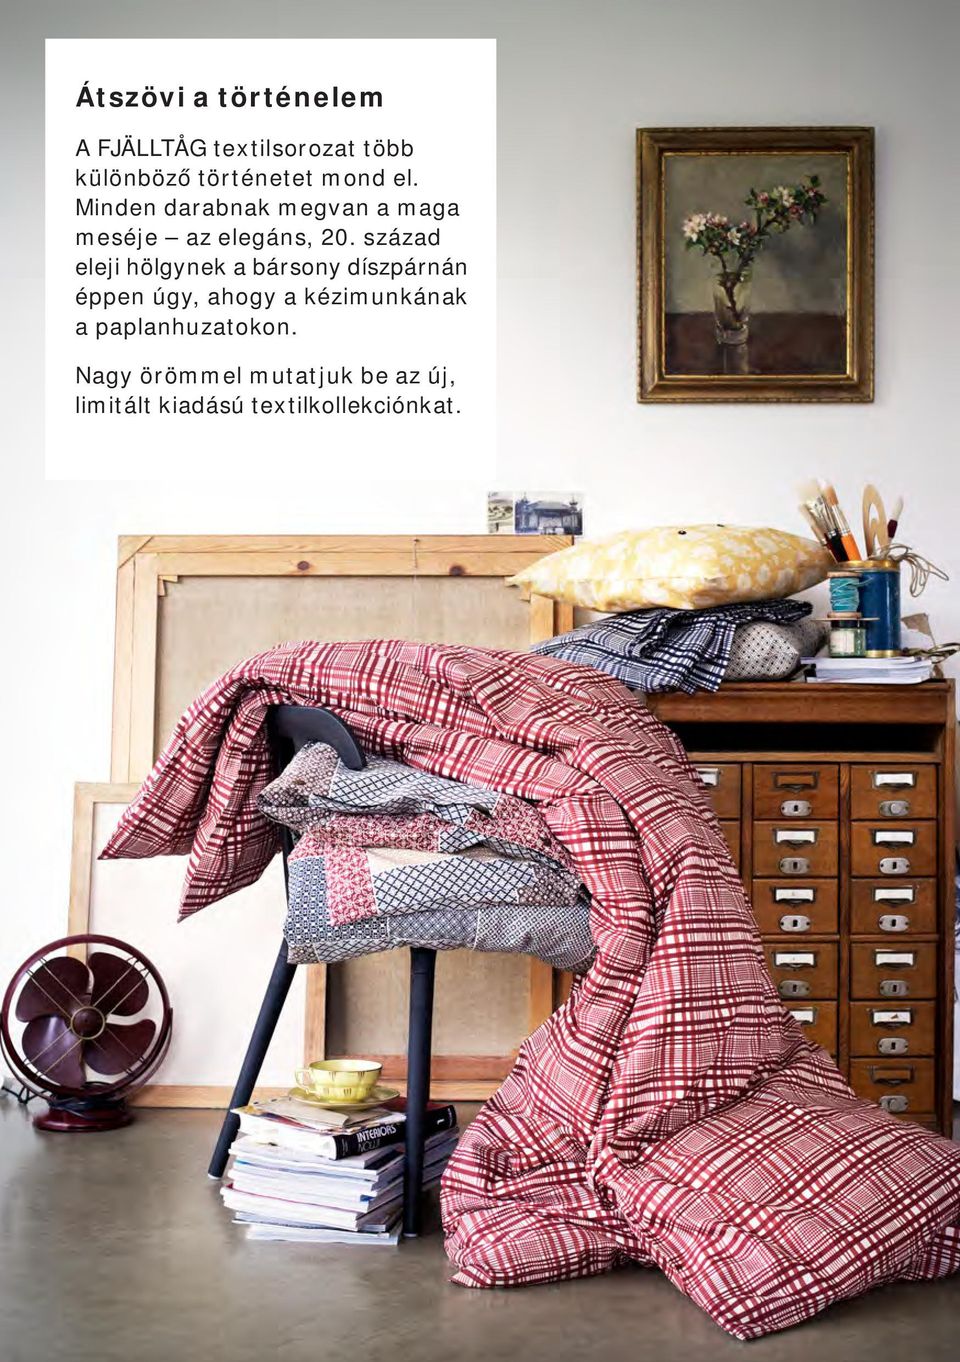 FJÄLLTÅG. Új, limitált kiadású textilkollekció - PDF Ingyenes letöltés